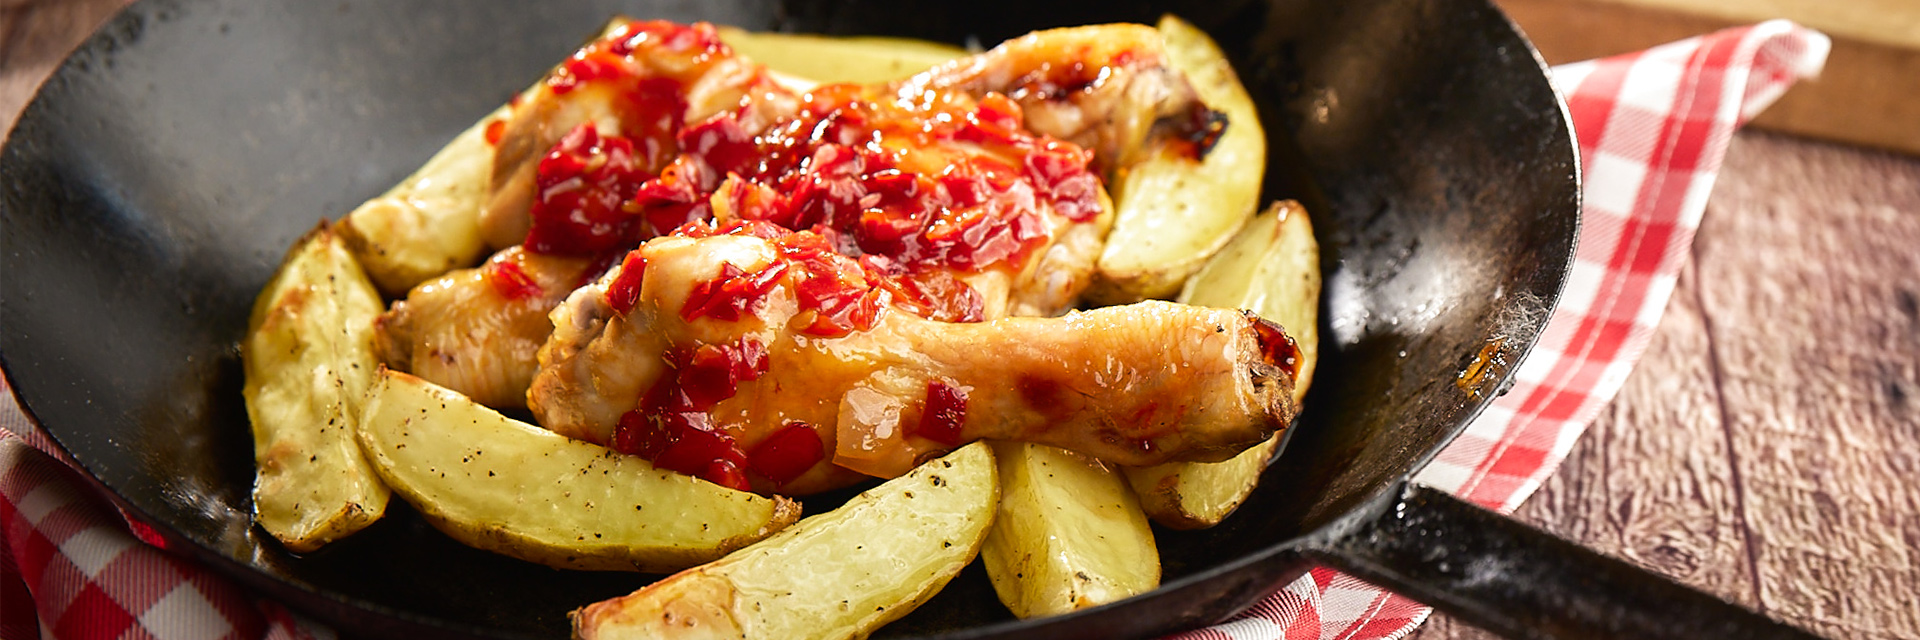 Cosce di pollo con peperoni rossi piccanti e patate al forno